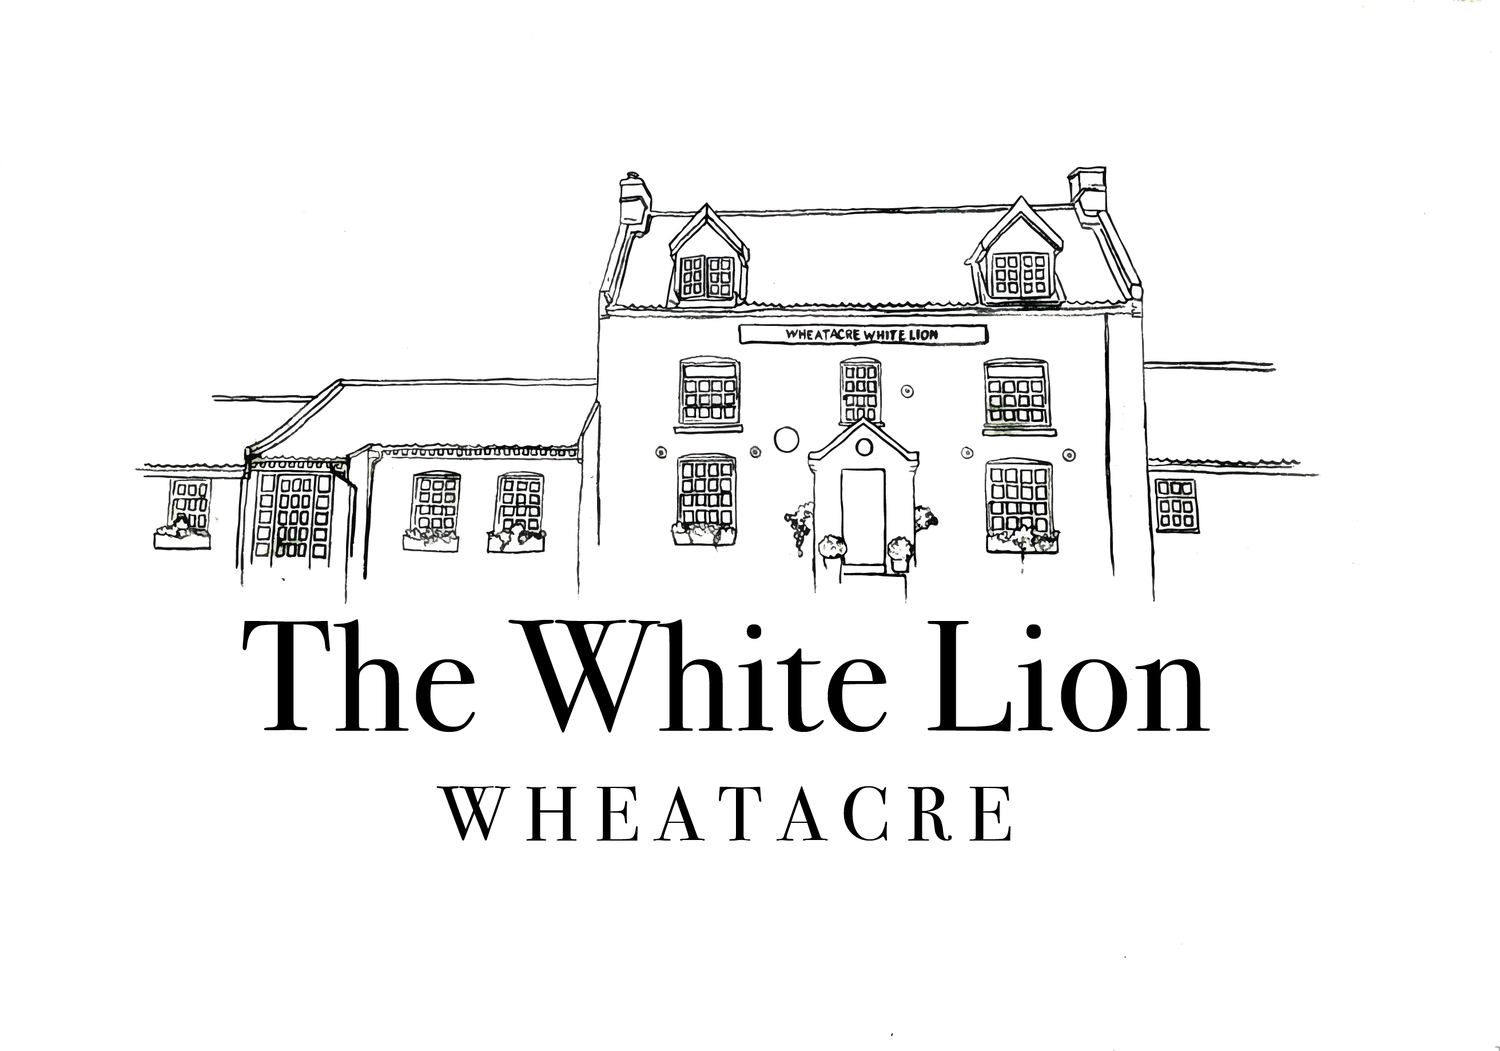 Wheatacre White Lion